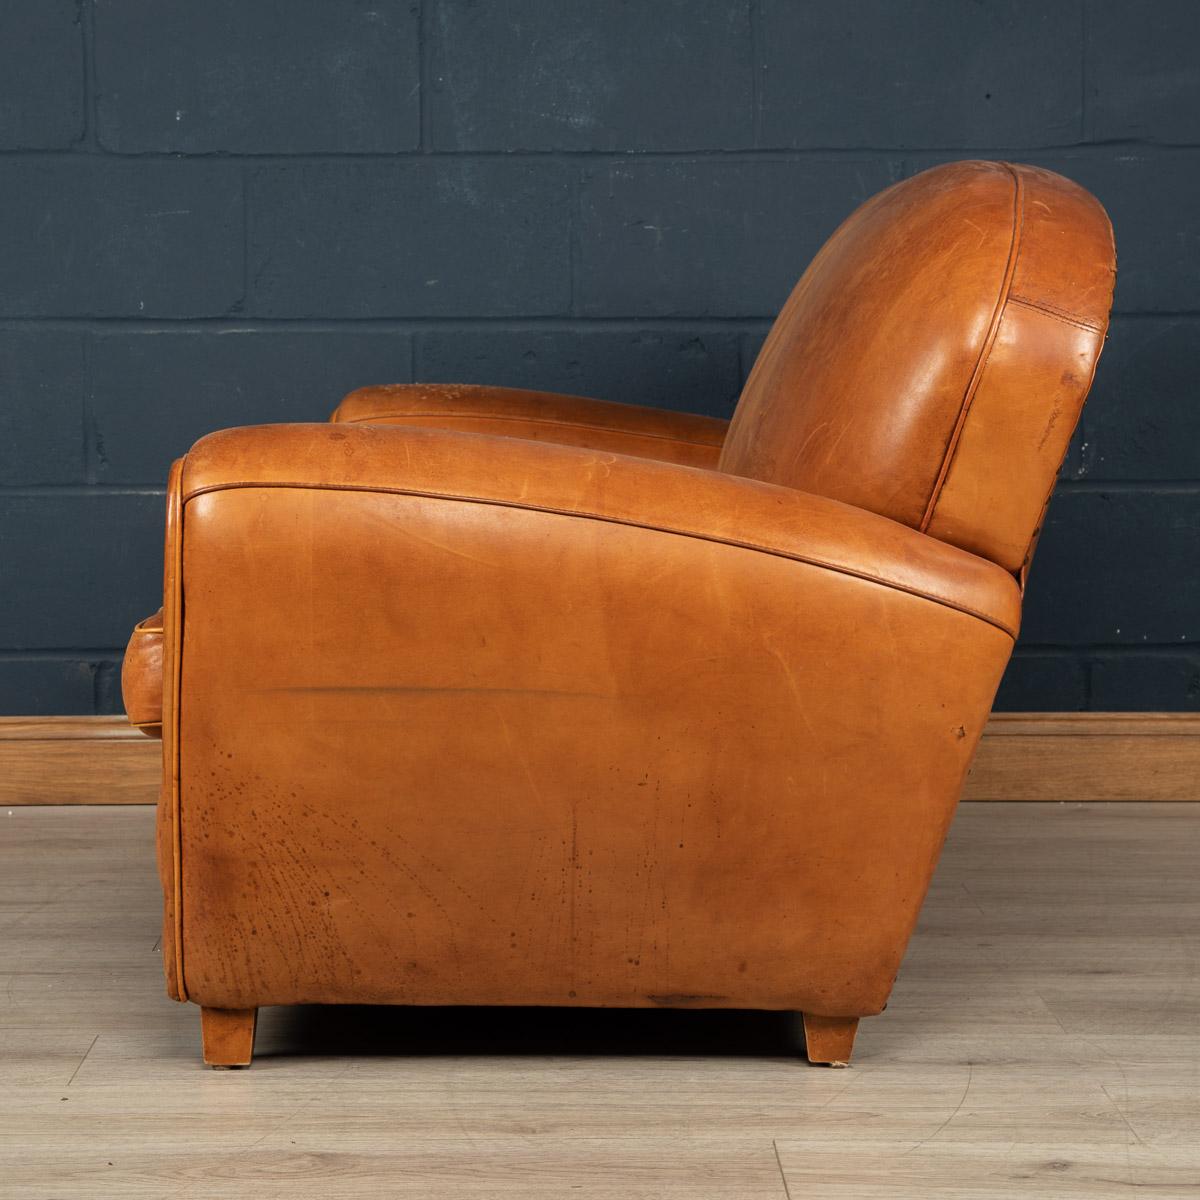 Ein hochwertiges Zweisitzer-Sofa aus Leder, hergestellt in Frankreich gegen Ende des letzten Jahrhunderts. Der handgefertigte Holzrahmen ist mit einem wunderbar hellbraunen Leder überzogen, das sich geschmeidig anfühlt und äußerst bequem ist. Auch